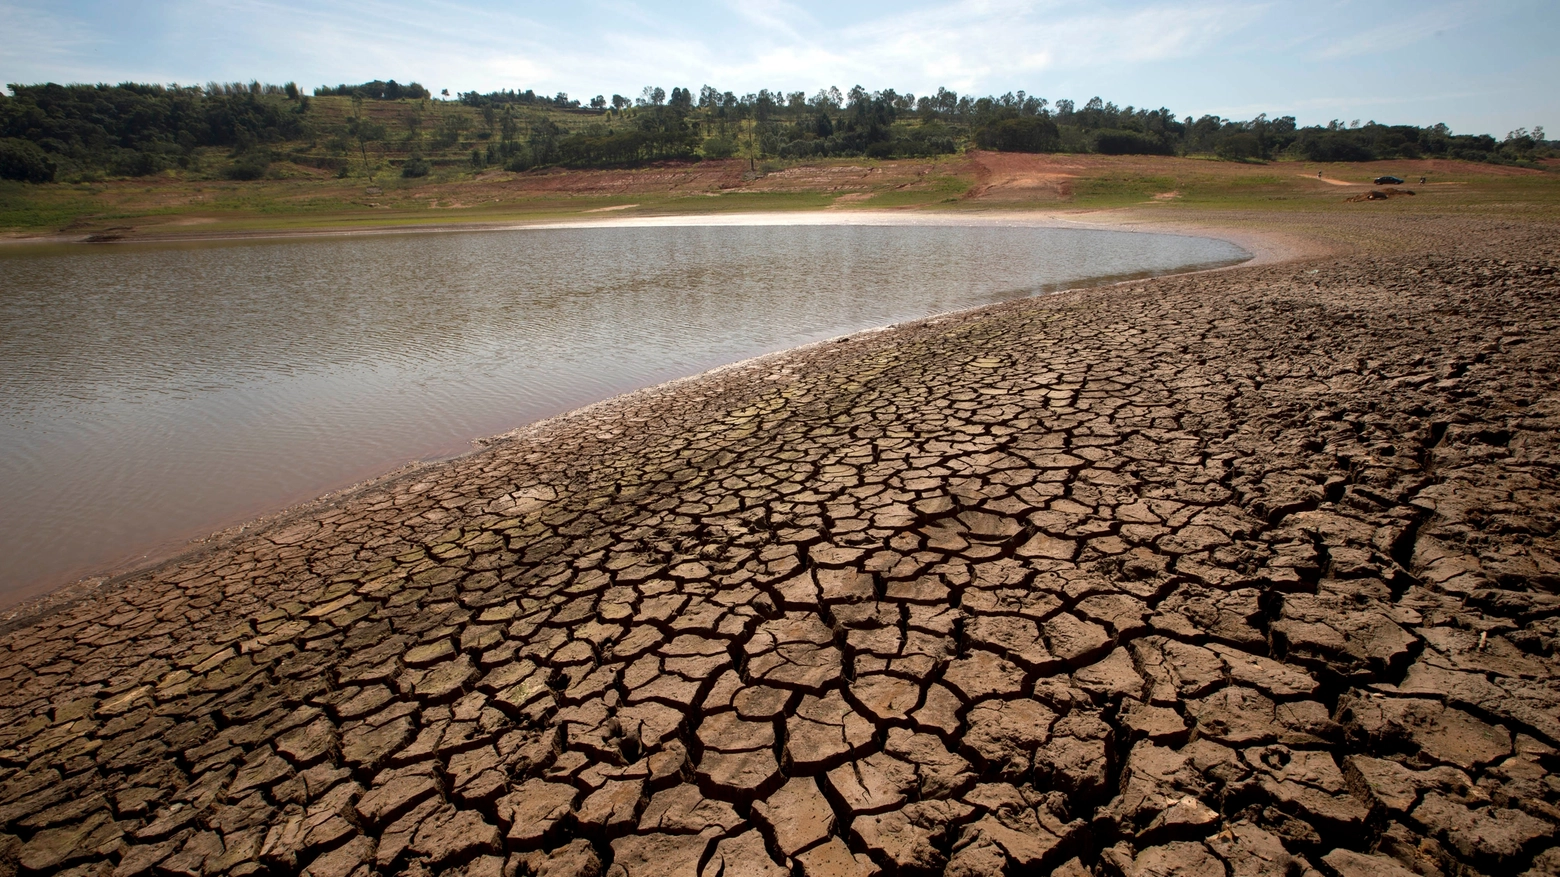 Debito ecologico, esaurite le risorse di acqua, terra e aria per il 2014 (Reuters)